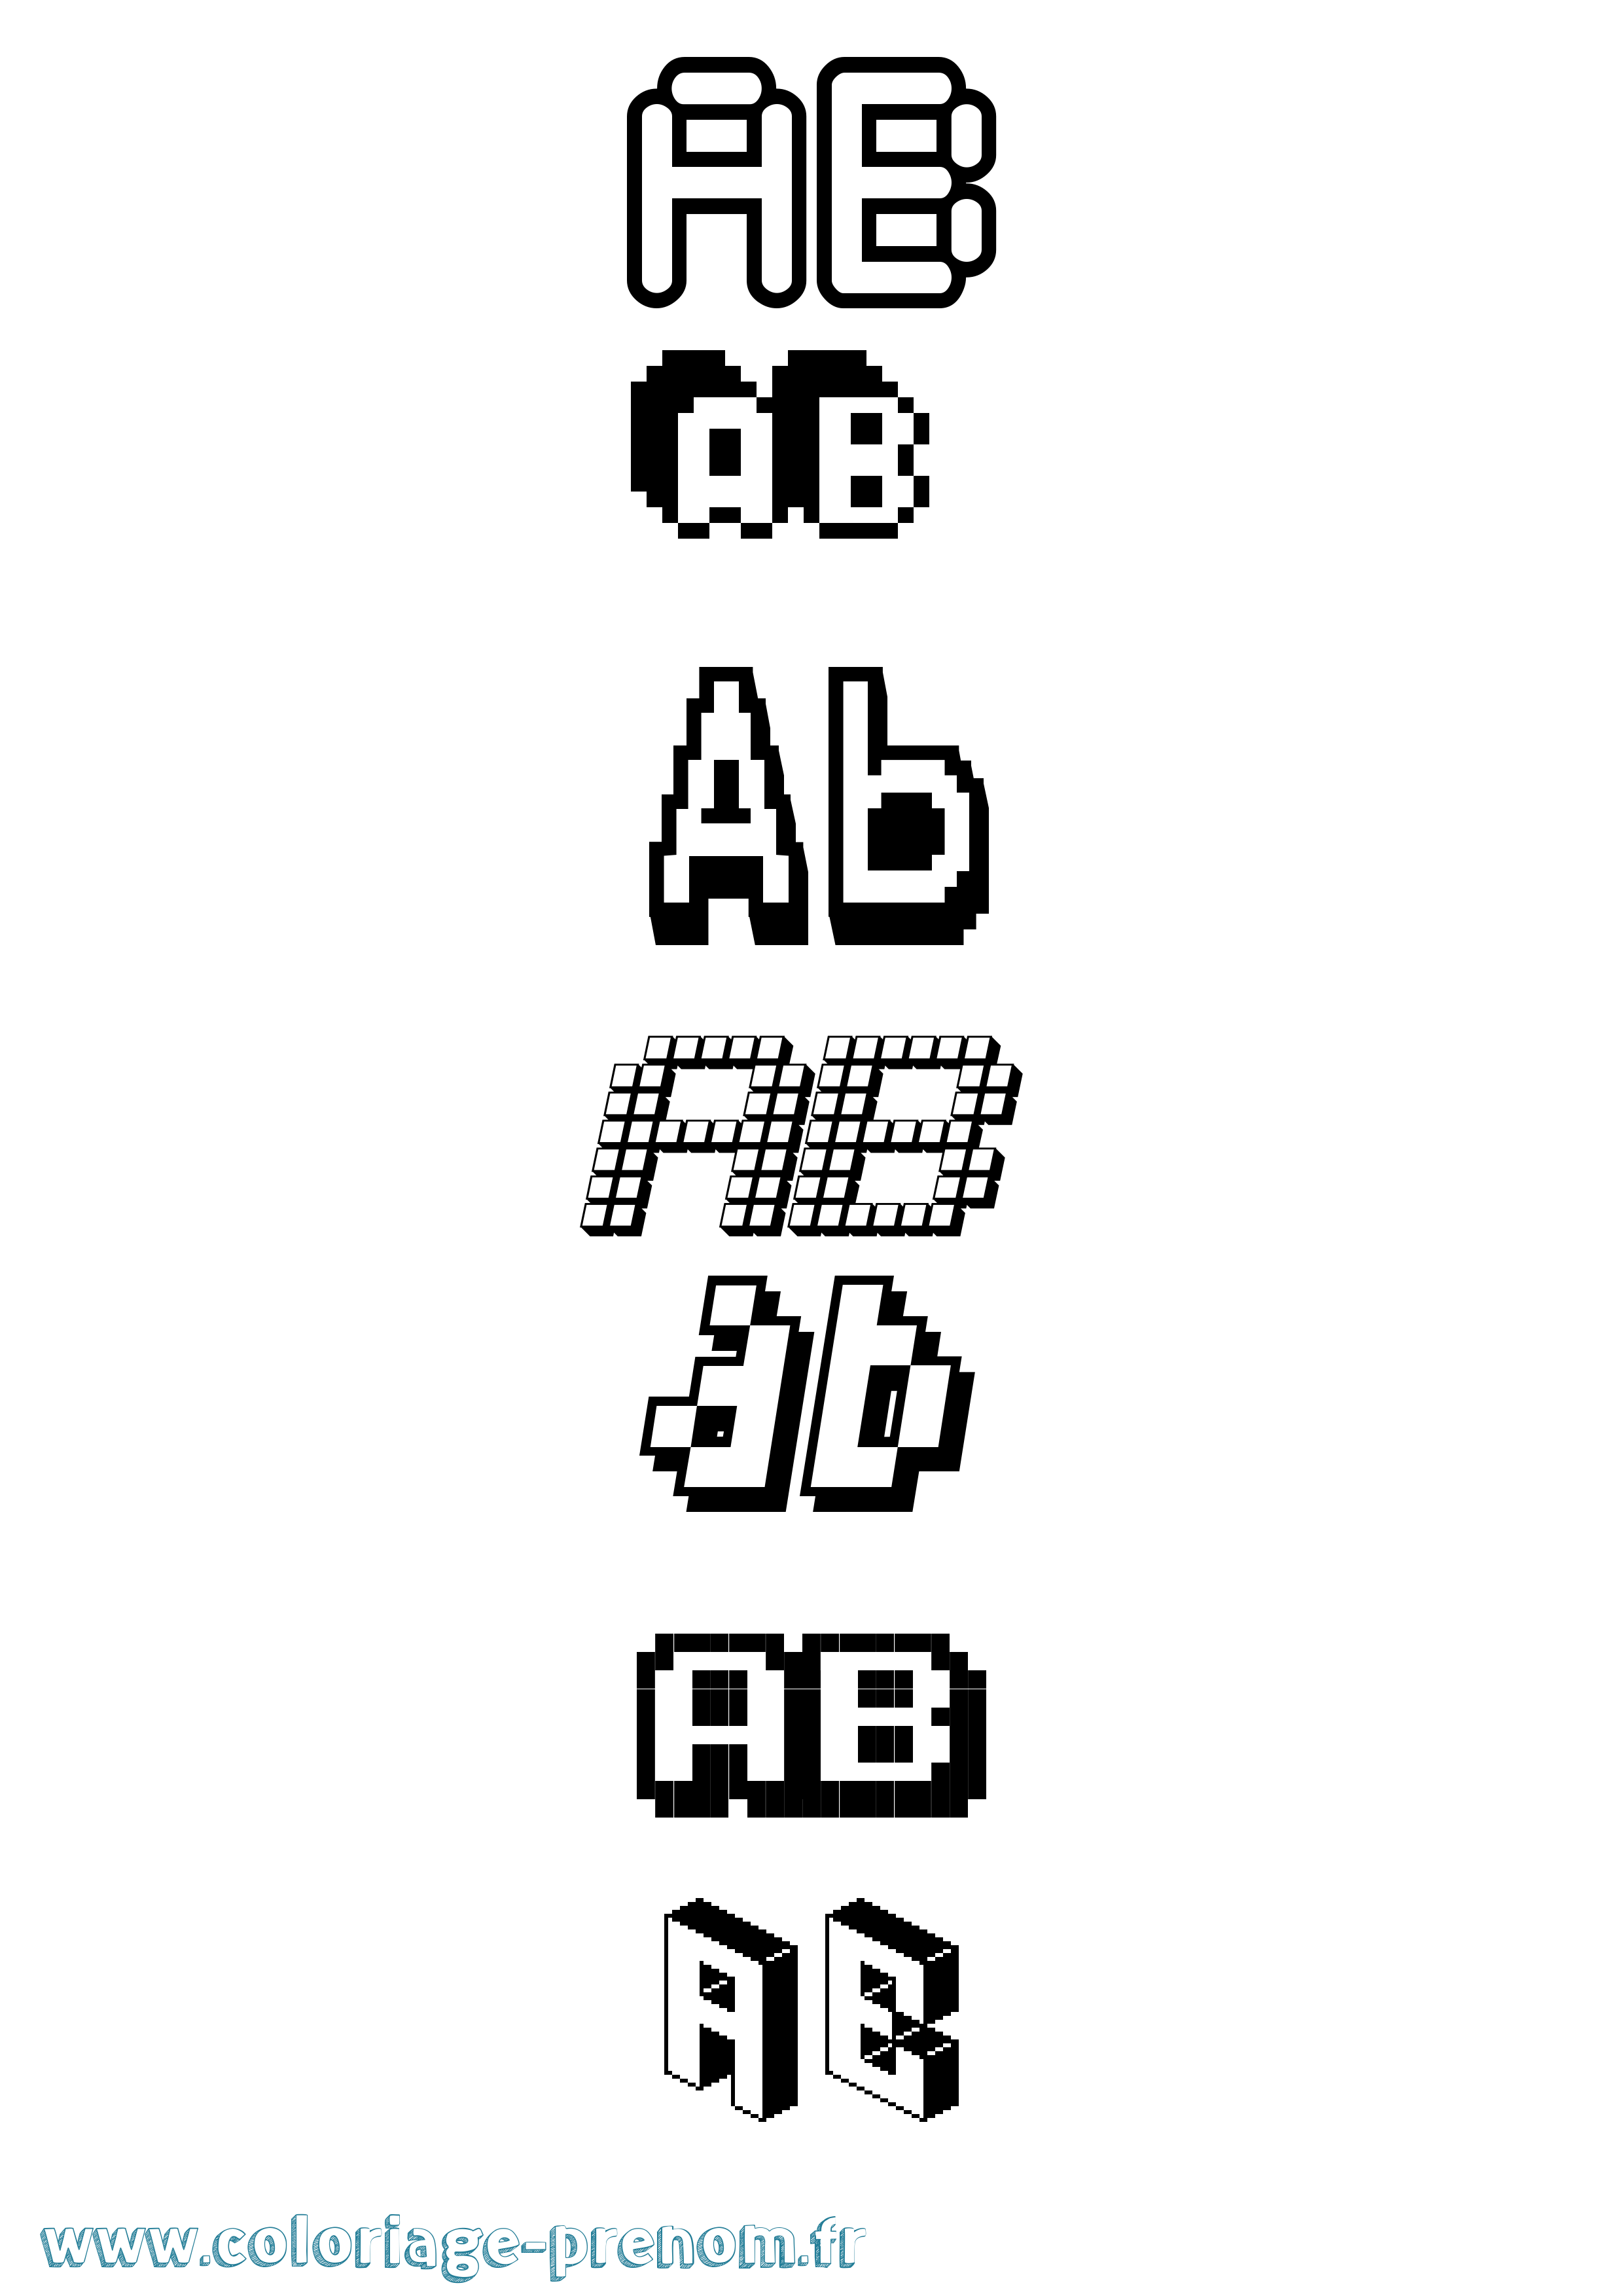 Coloriage prénom Ab Pixel